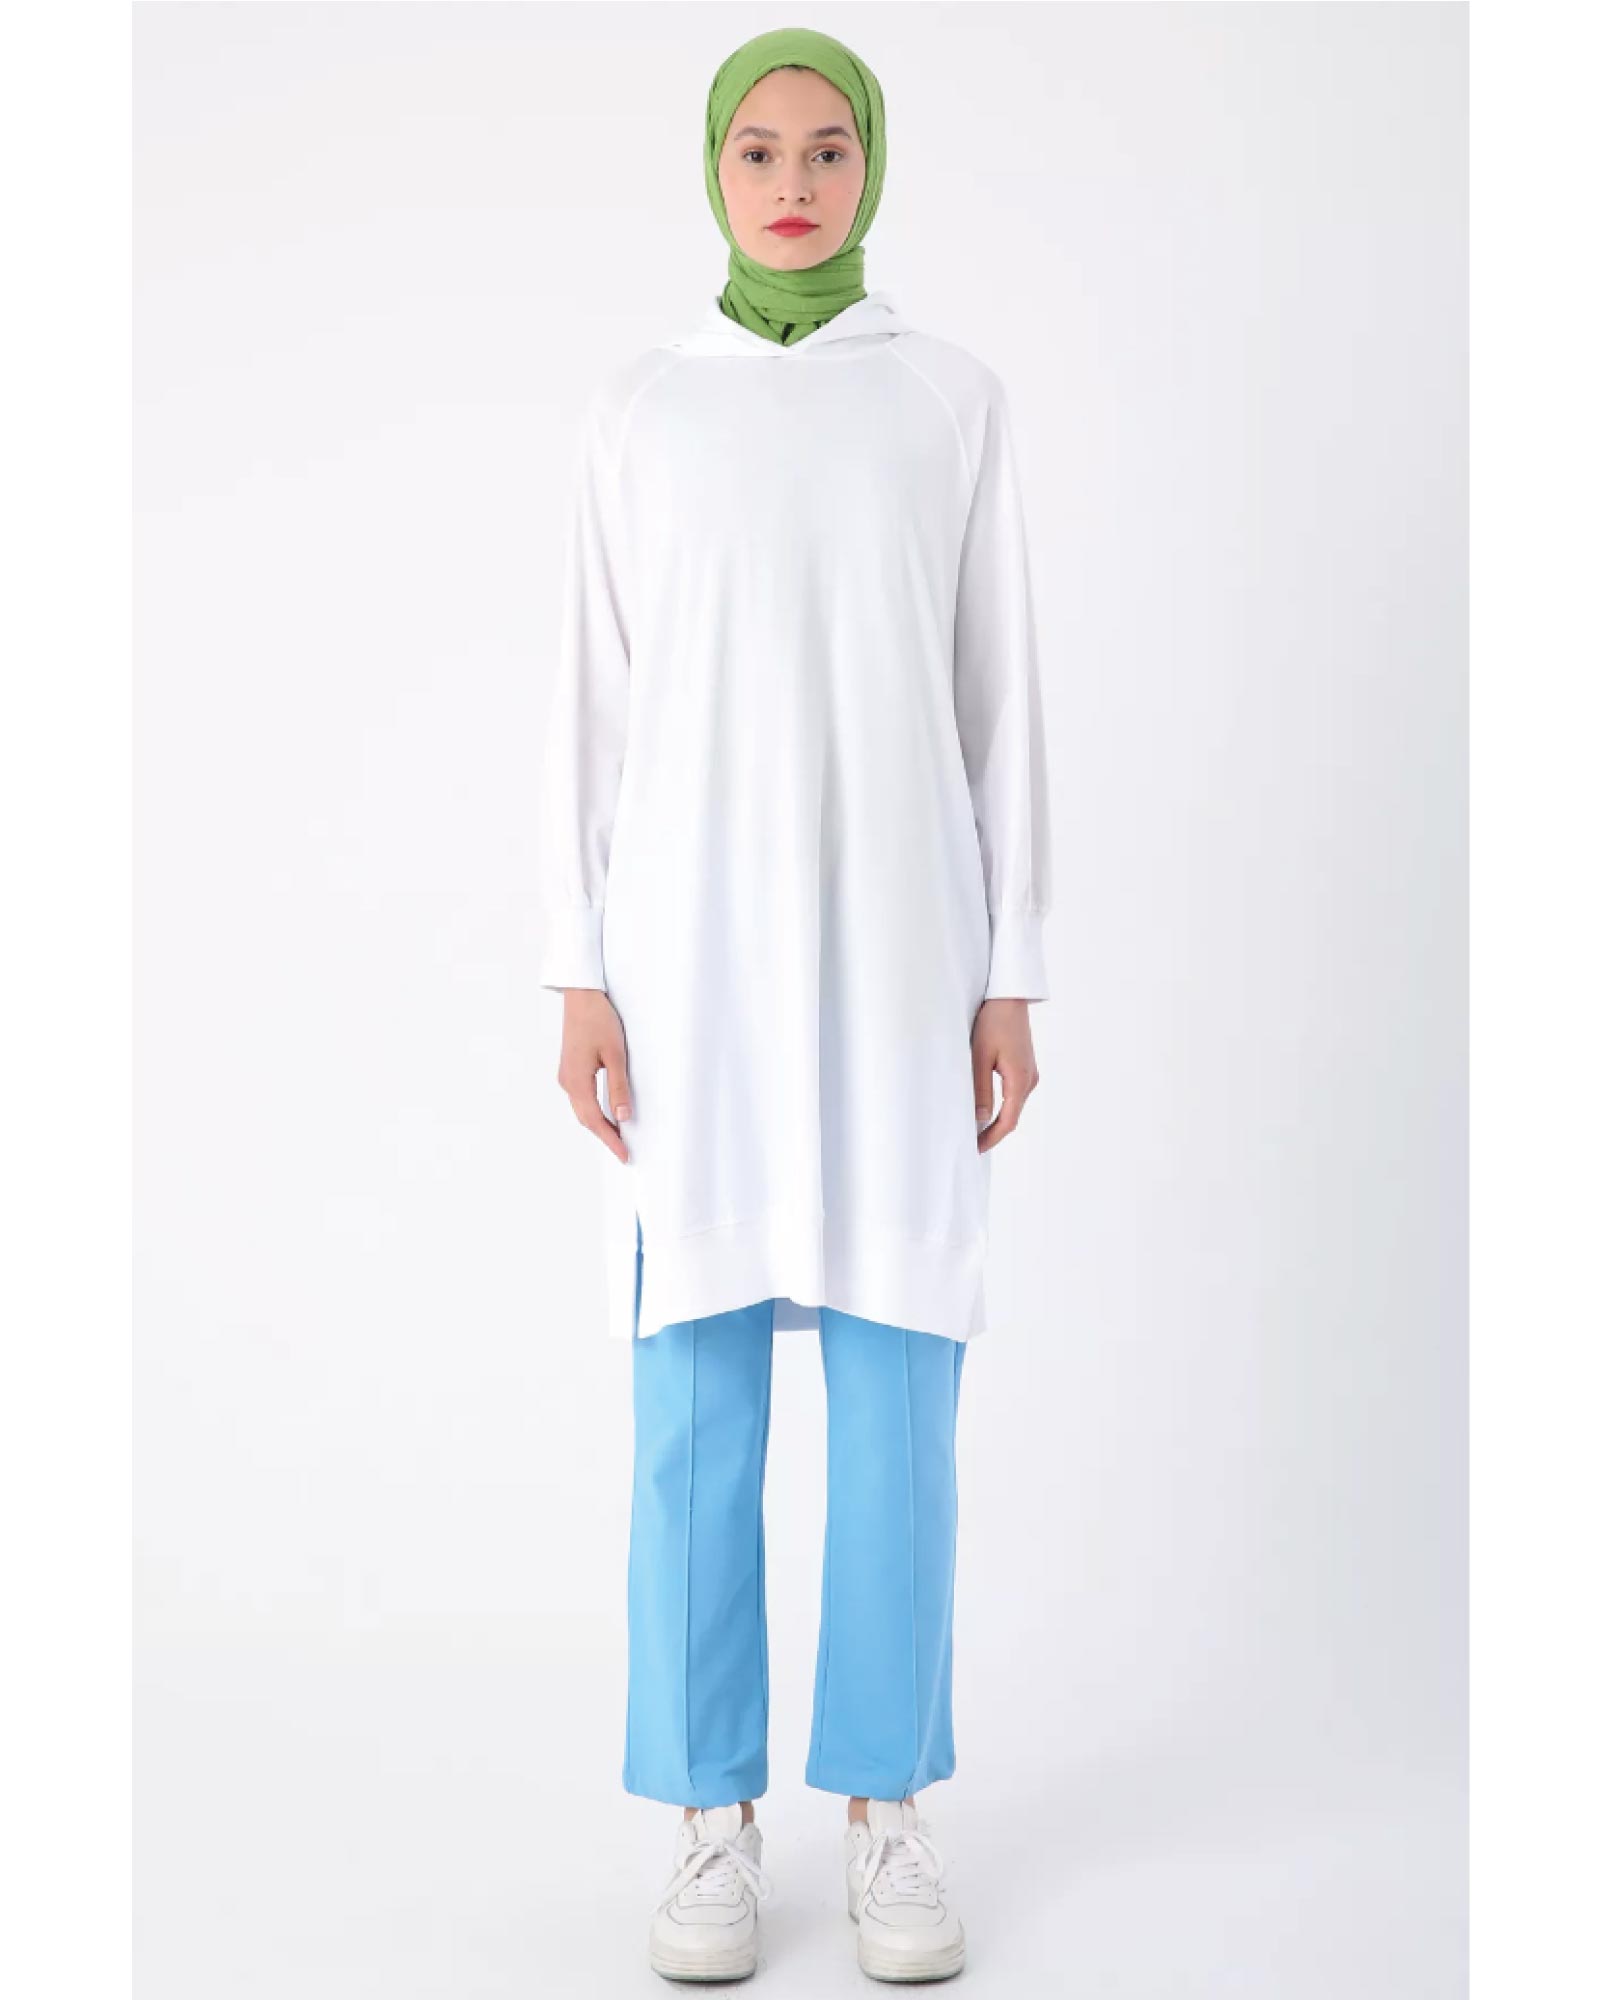 Supima cotton hijab tunic with hood, raglan sleeves and side slits